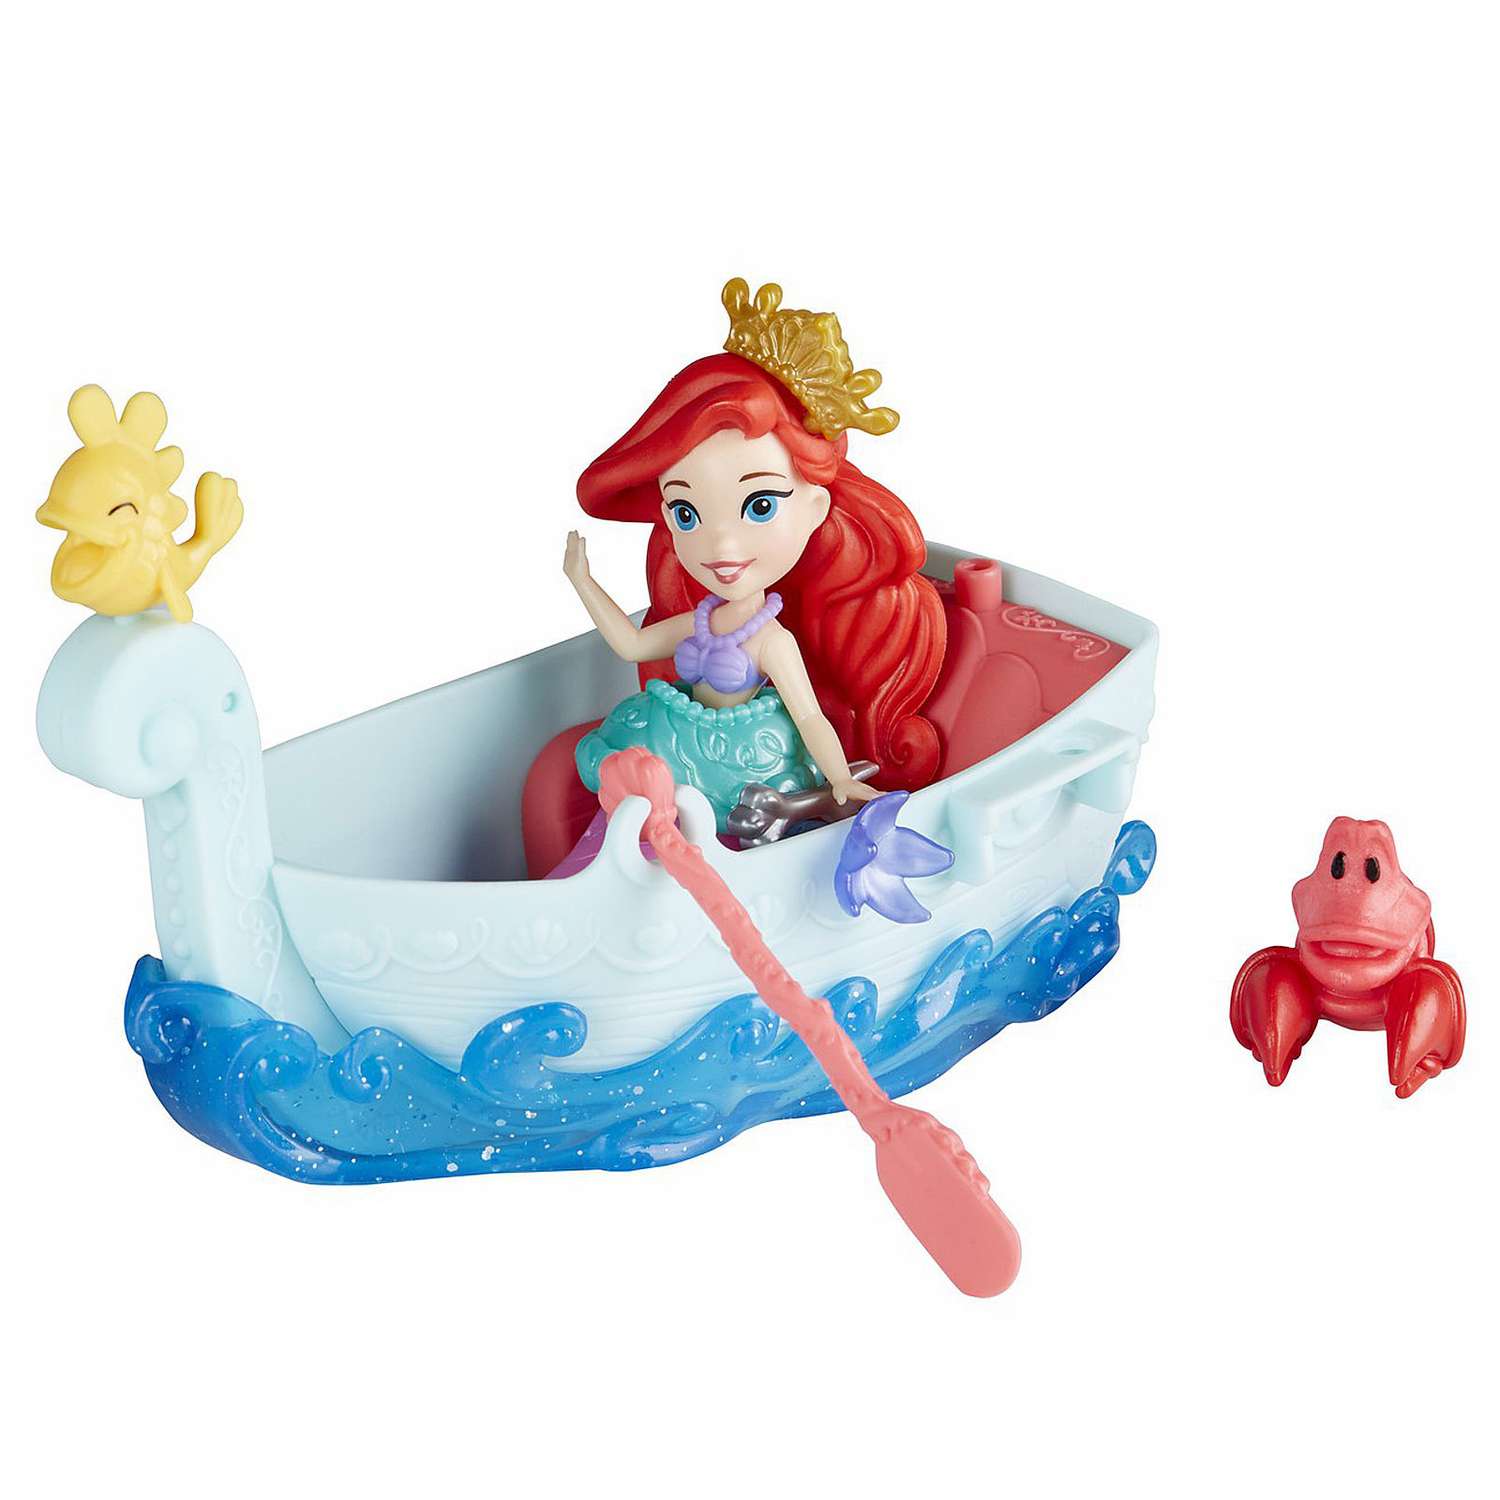 Набор Princess Disney Фигурка и лодка в ассортименте E0068EU4 E0068EU4 - фото 14